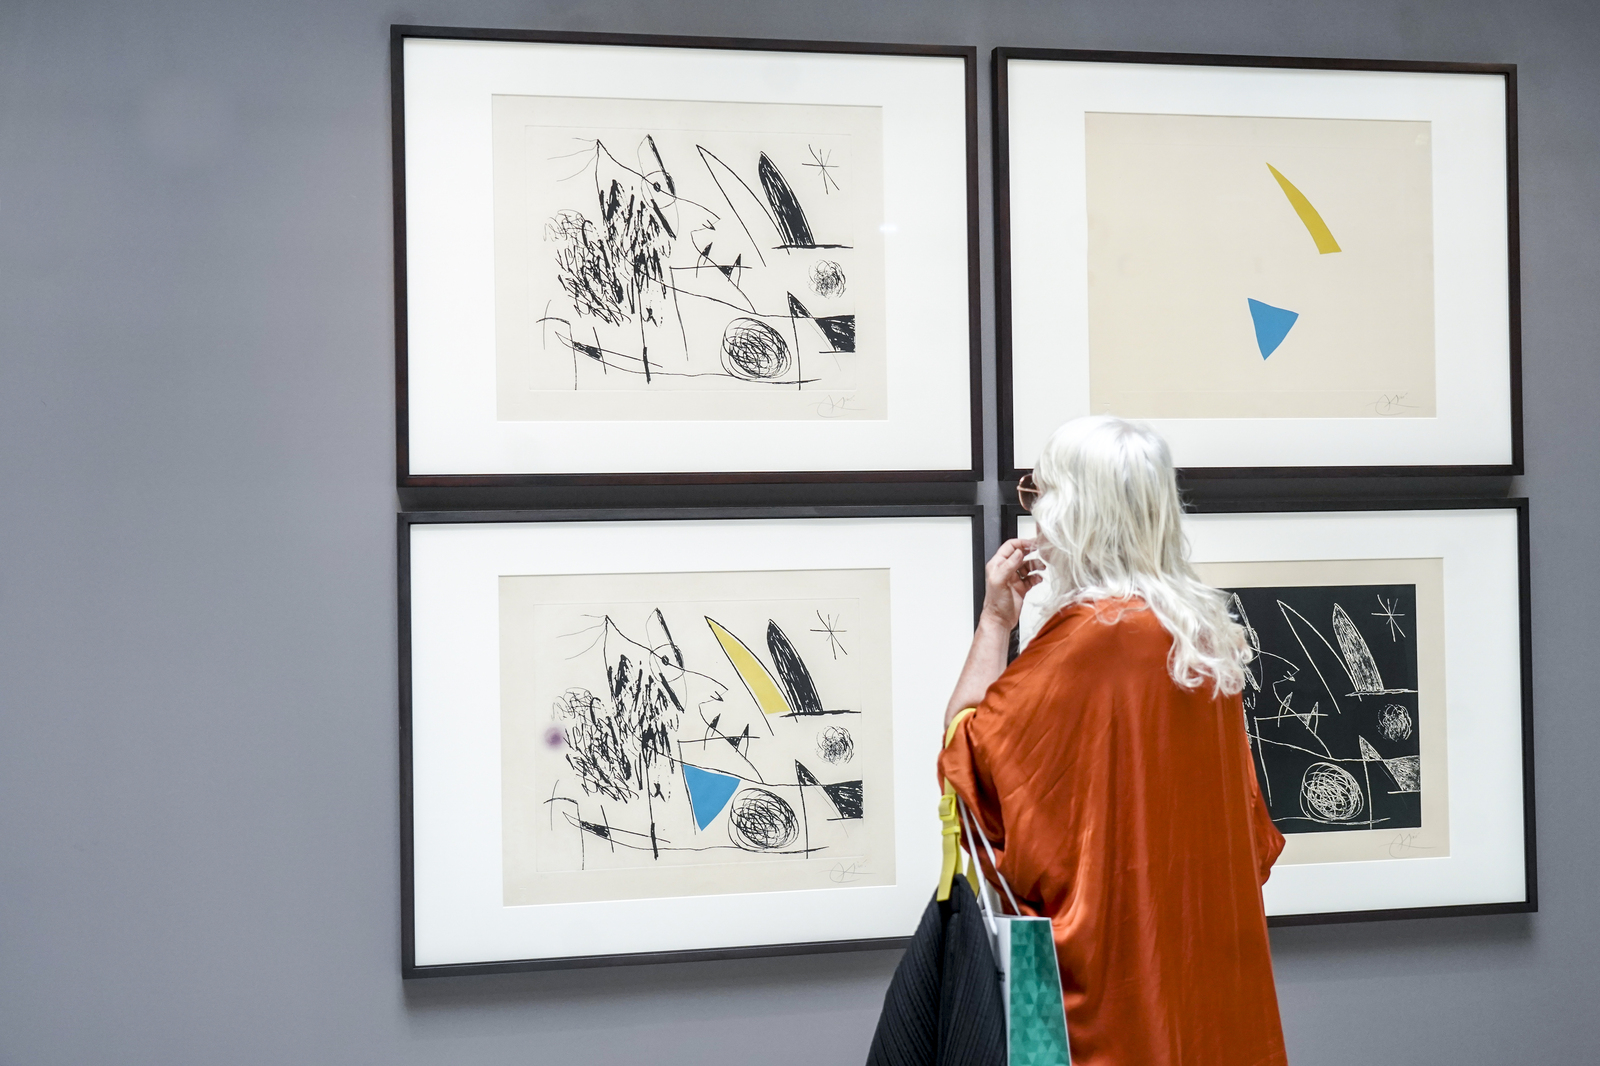 Una de las obras de Miró. Las realizó con objetivo didáctico, para enseñar el proceso del grabado.